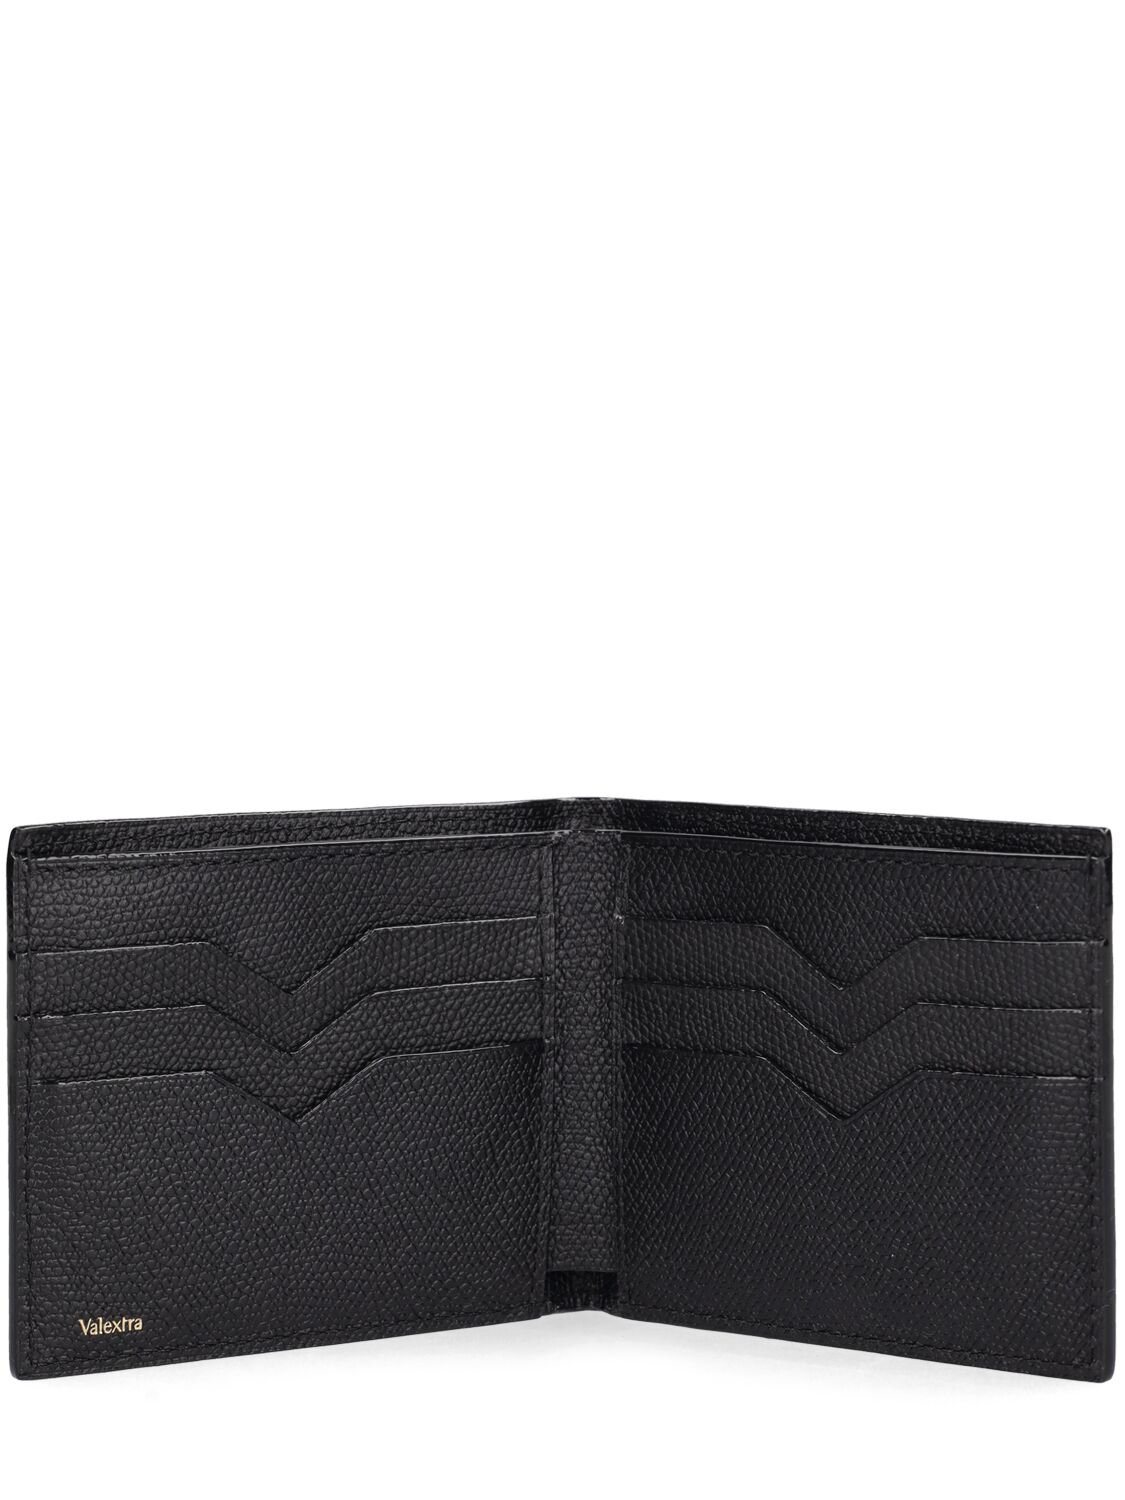 Shop Valextra 6cc Leather Bifold Wallet In Schwarz